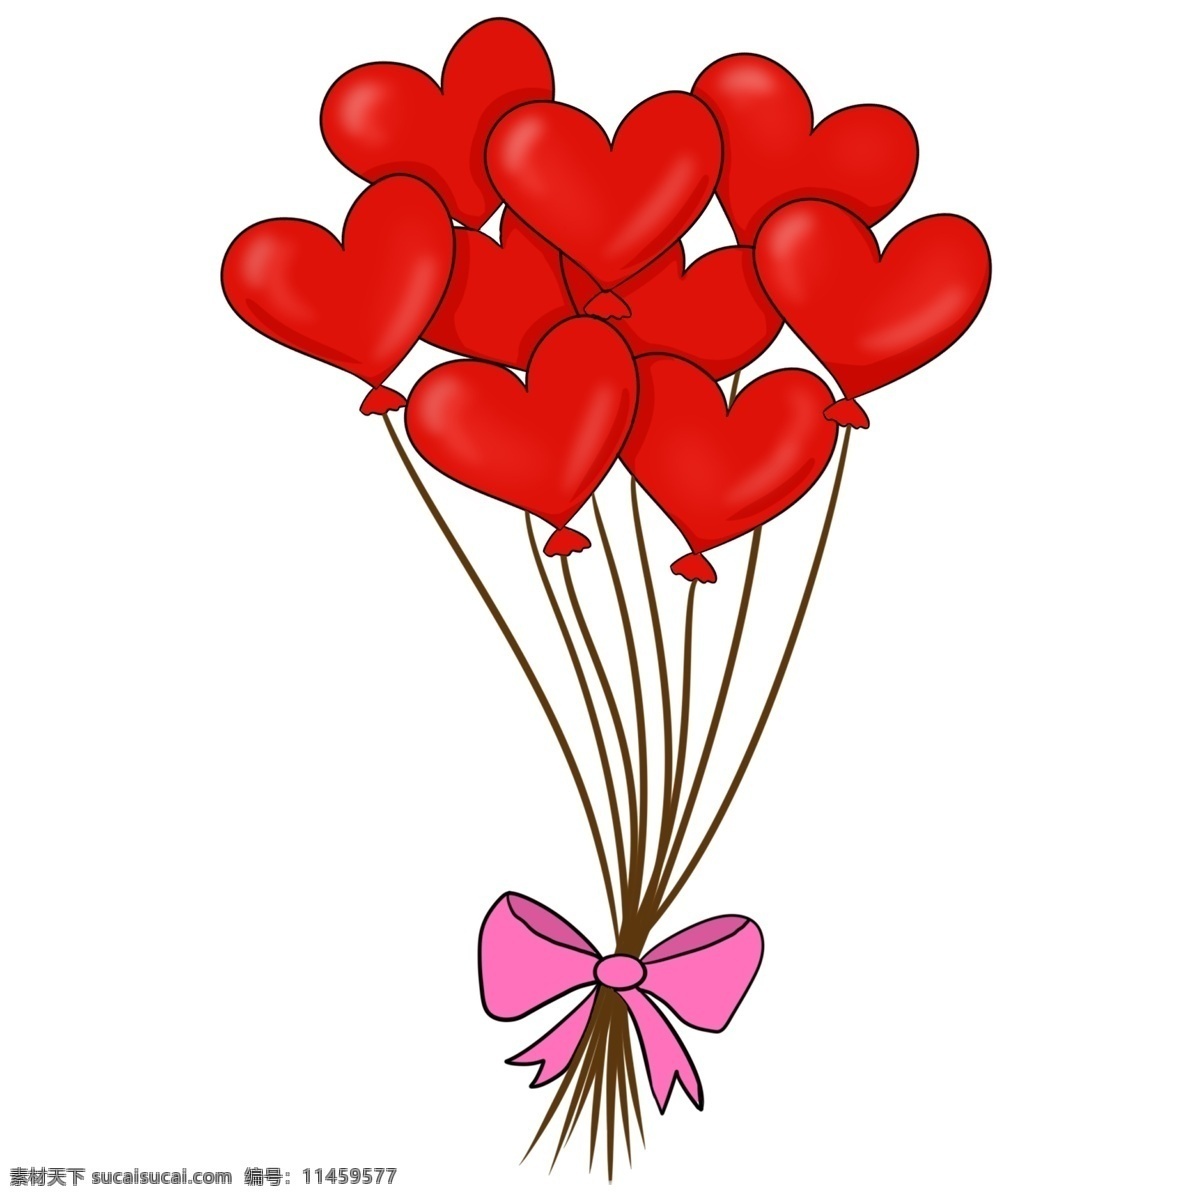 红心 婚礼 气球 插画 婚礼气球 红色 心形 浪漫 婚礼装饰 粉色蝴蝶结 婚庆 漂浮的气球 气球插画